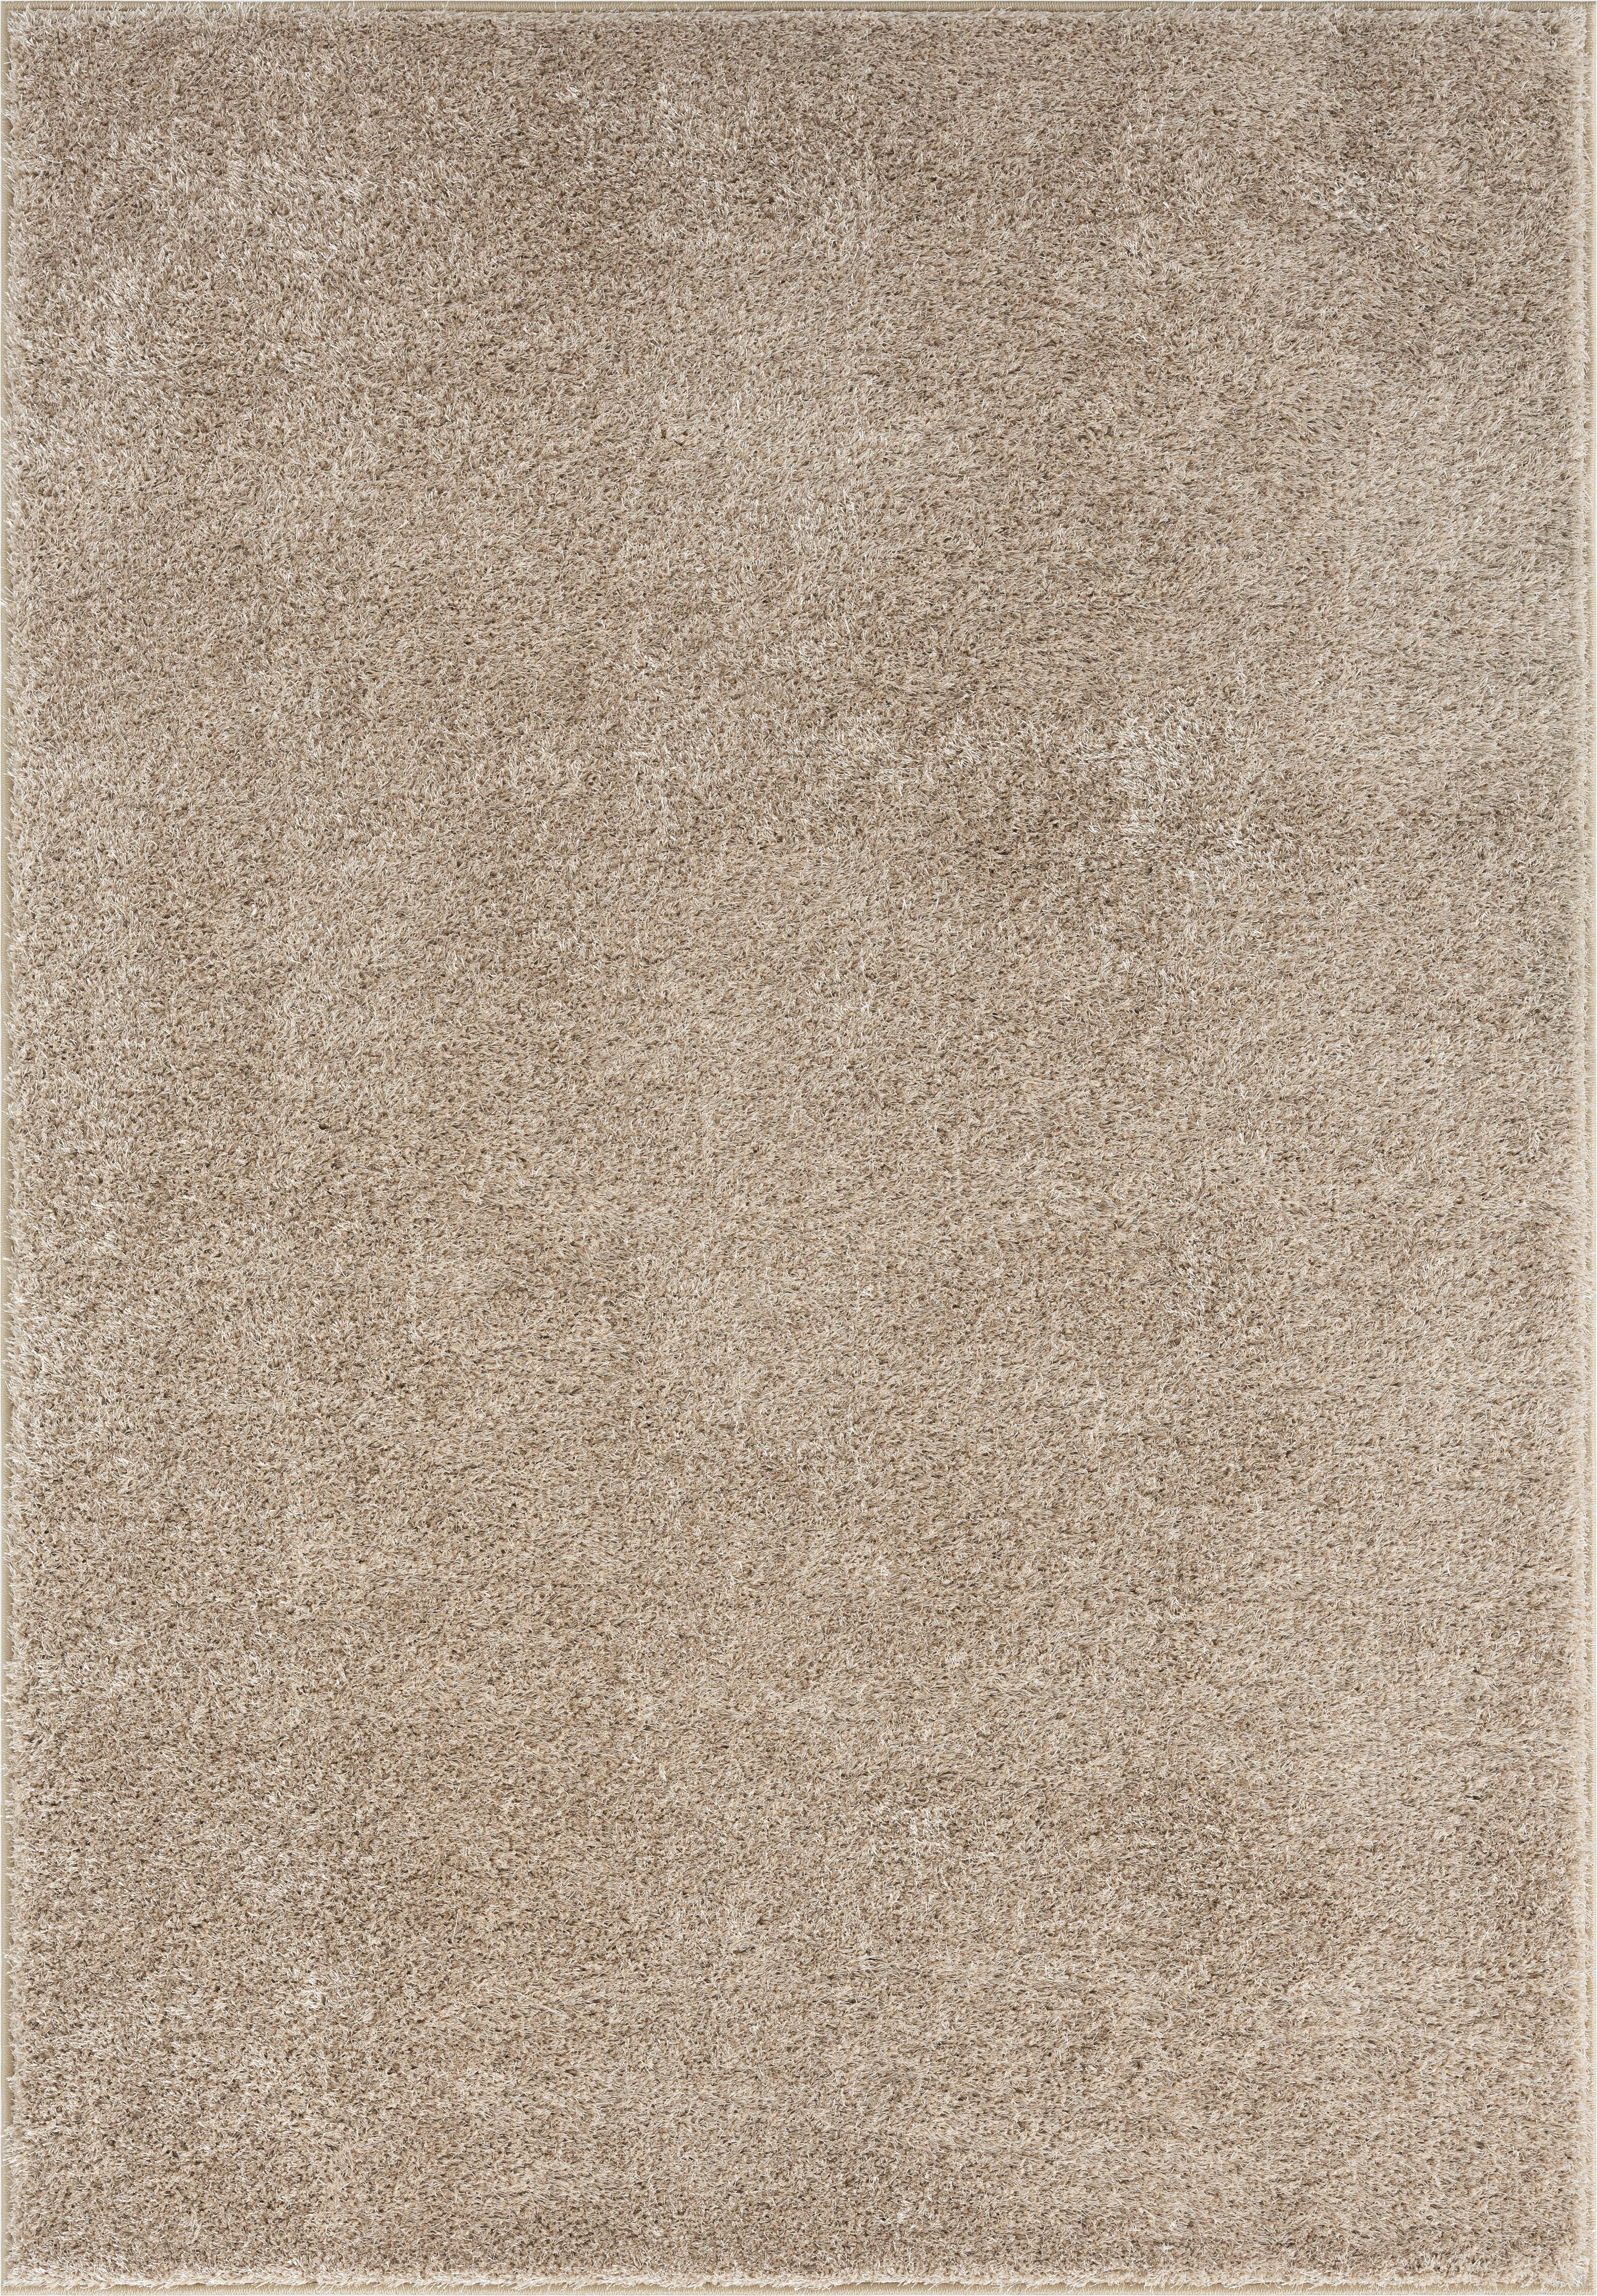 Hochflor Teppich Beige Tessa 160x230 cm - Beige, Basics, Textil (160/230cm) - Luca Bessoni